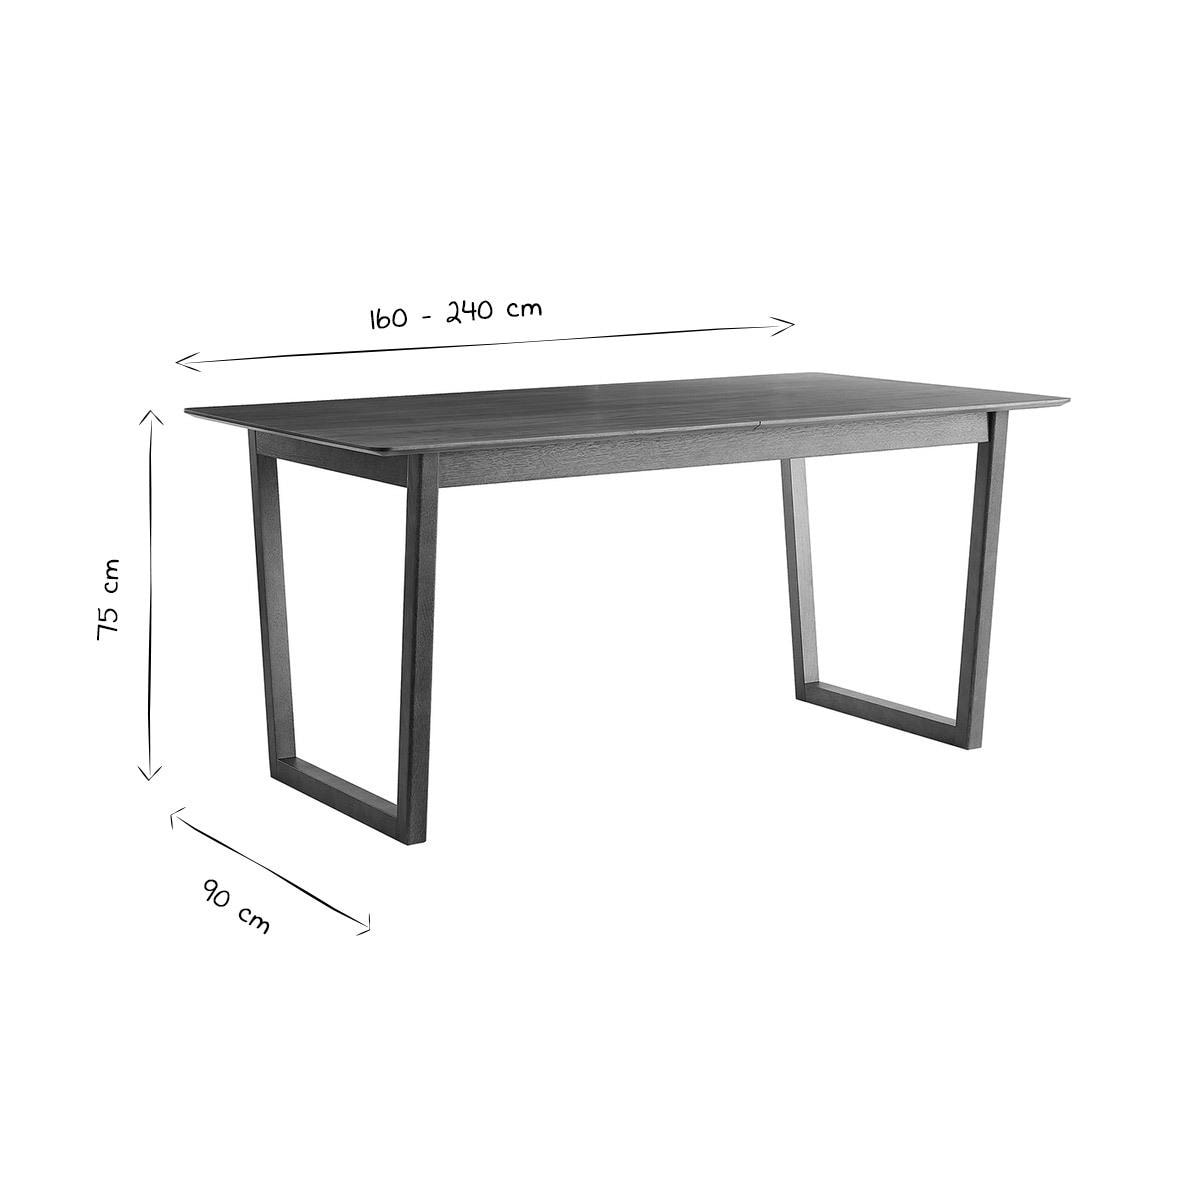 Table extensible rallonges intégrées rectangulaire en bois foncé noyer L160-240 cm LAHO